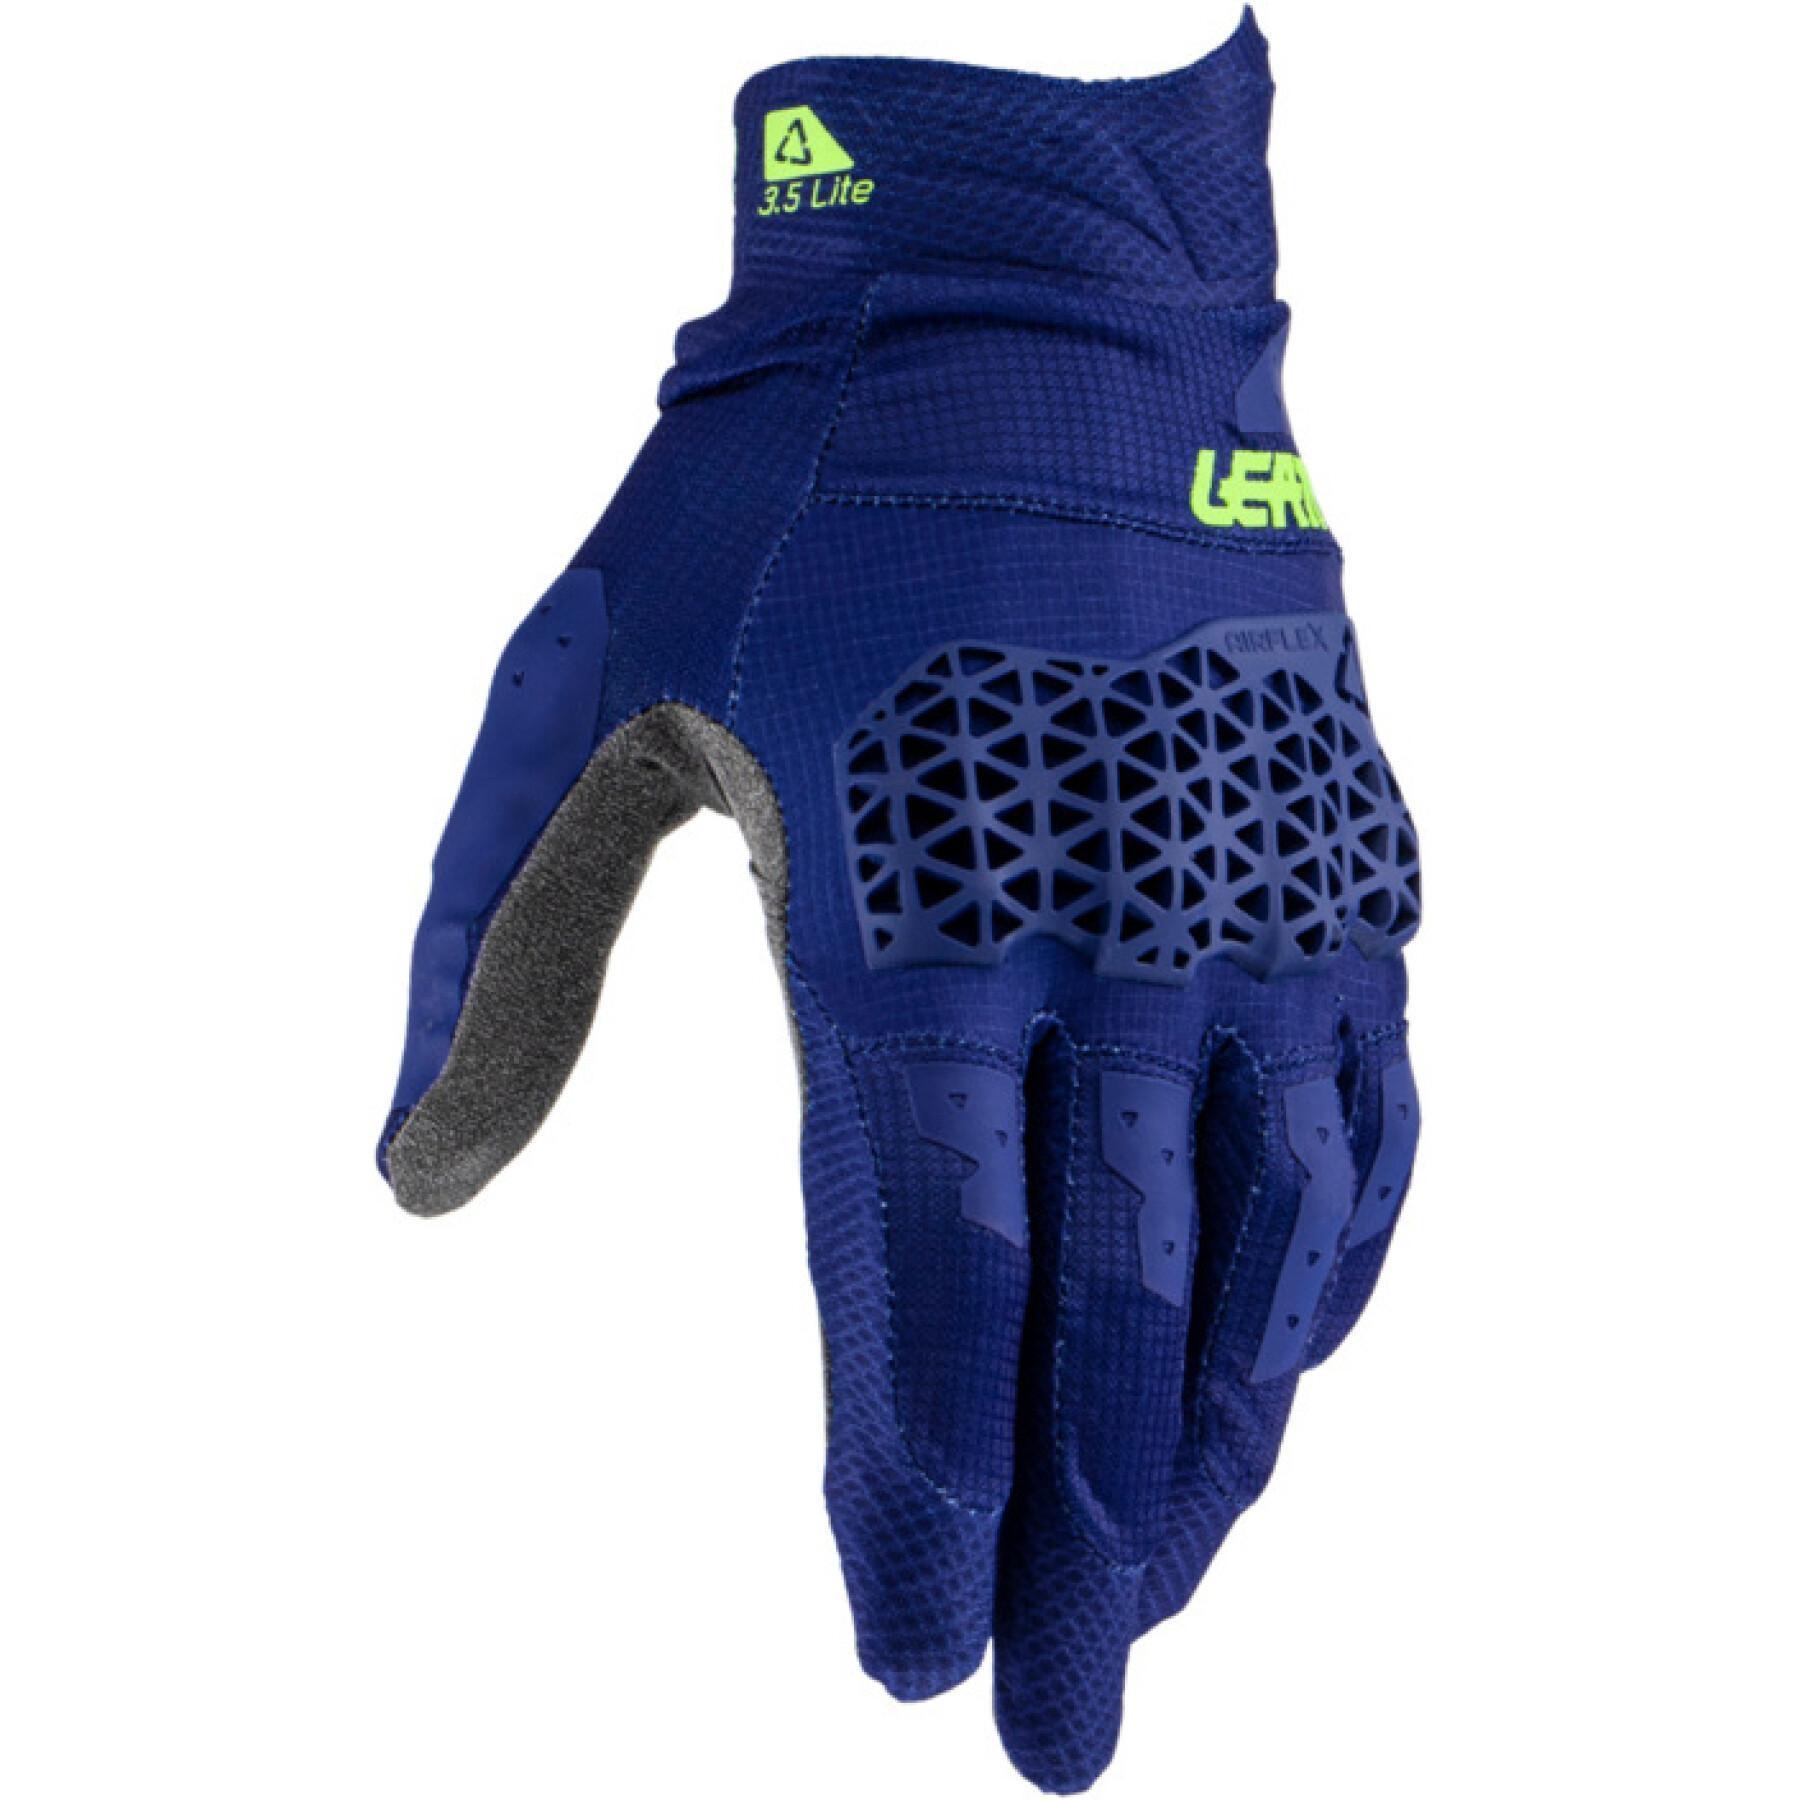 Motocross-Handschuhe Leatt 3.5 Lite 23